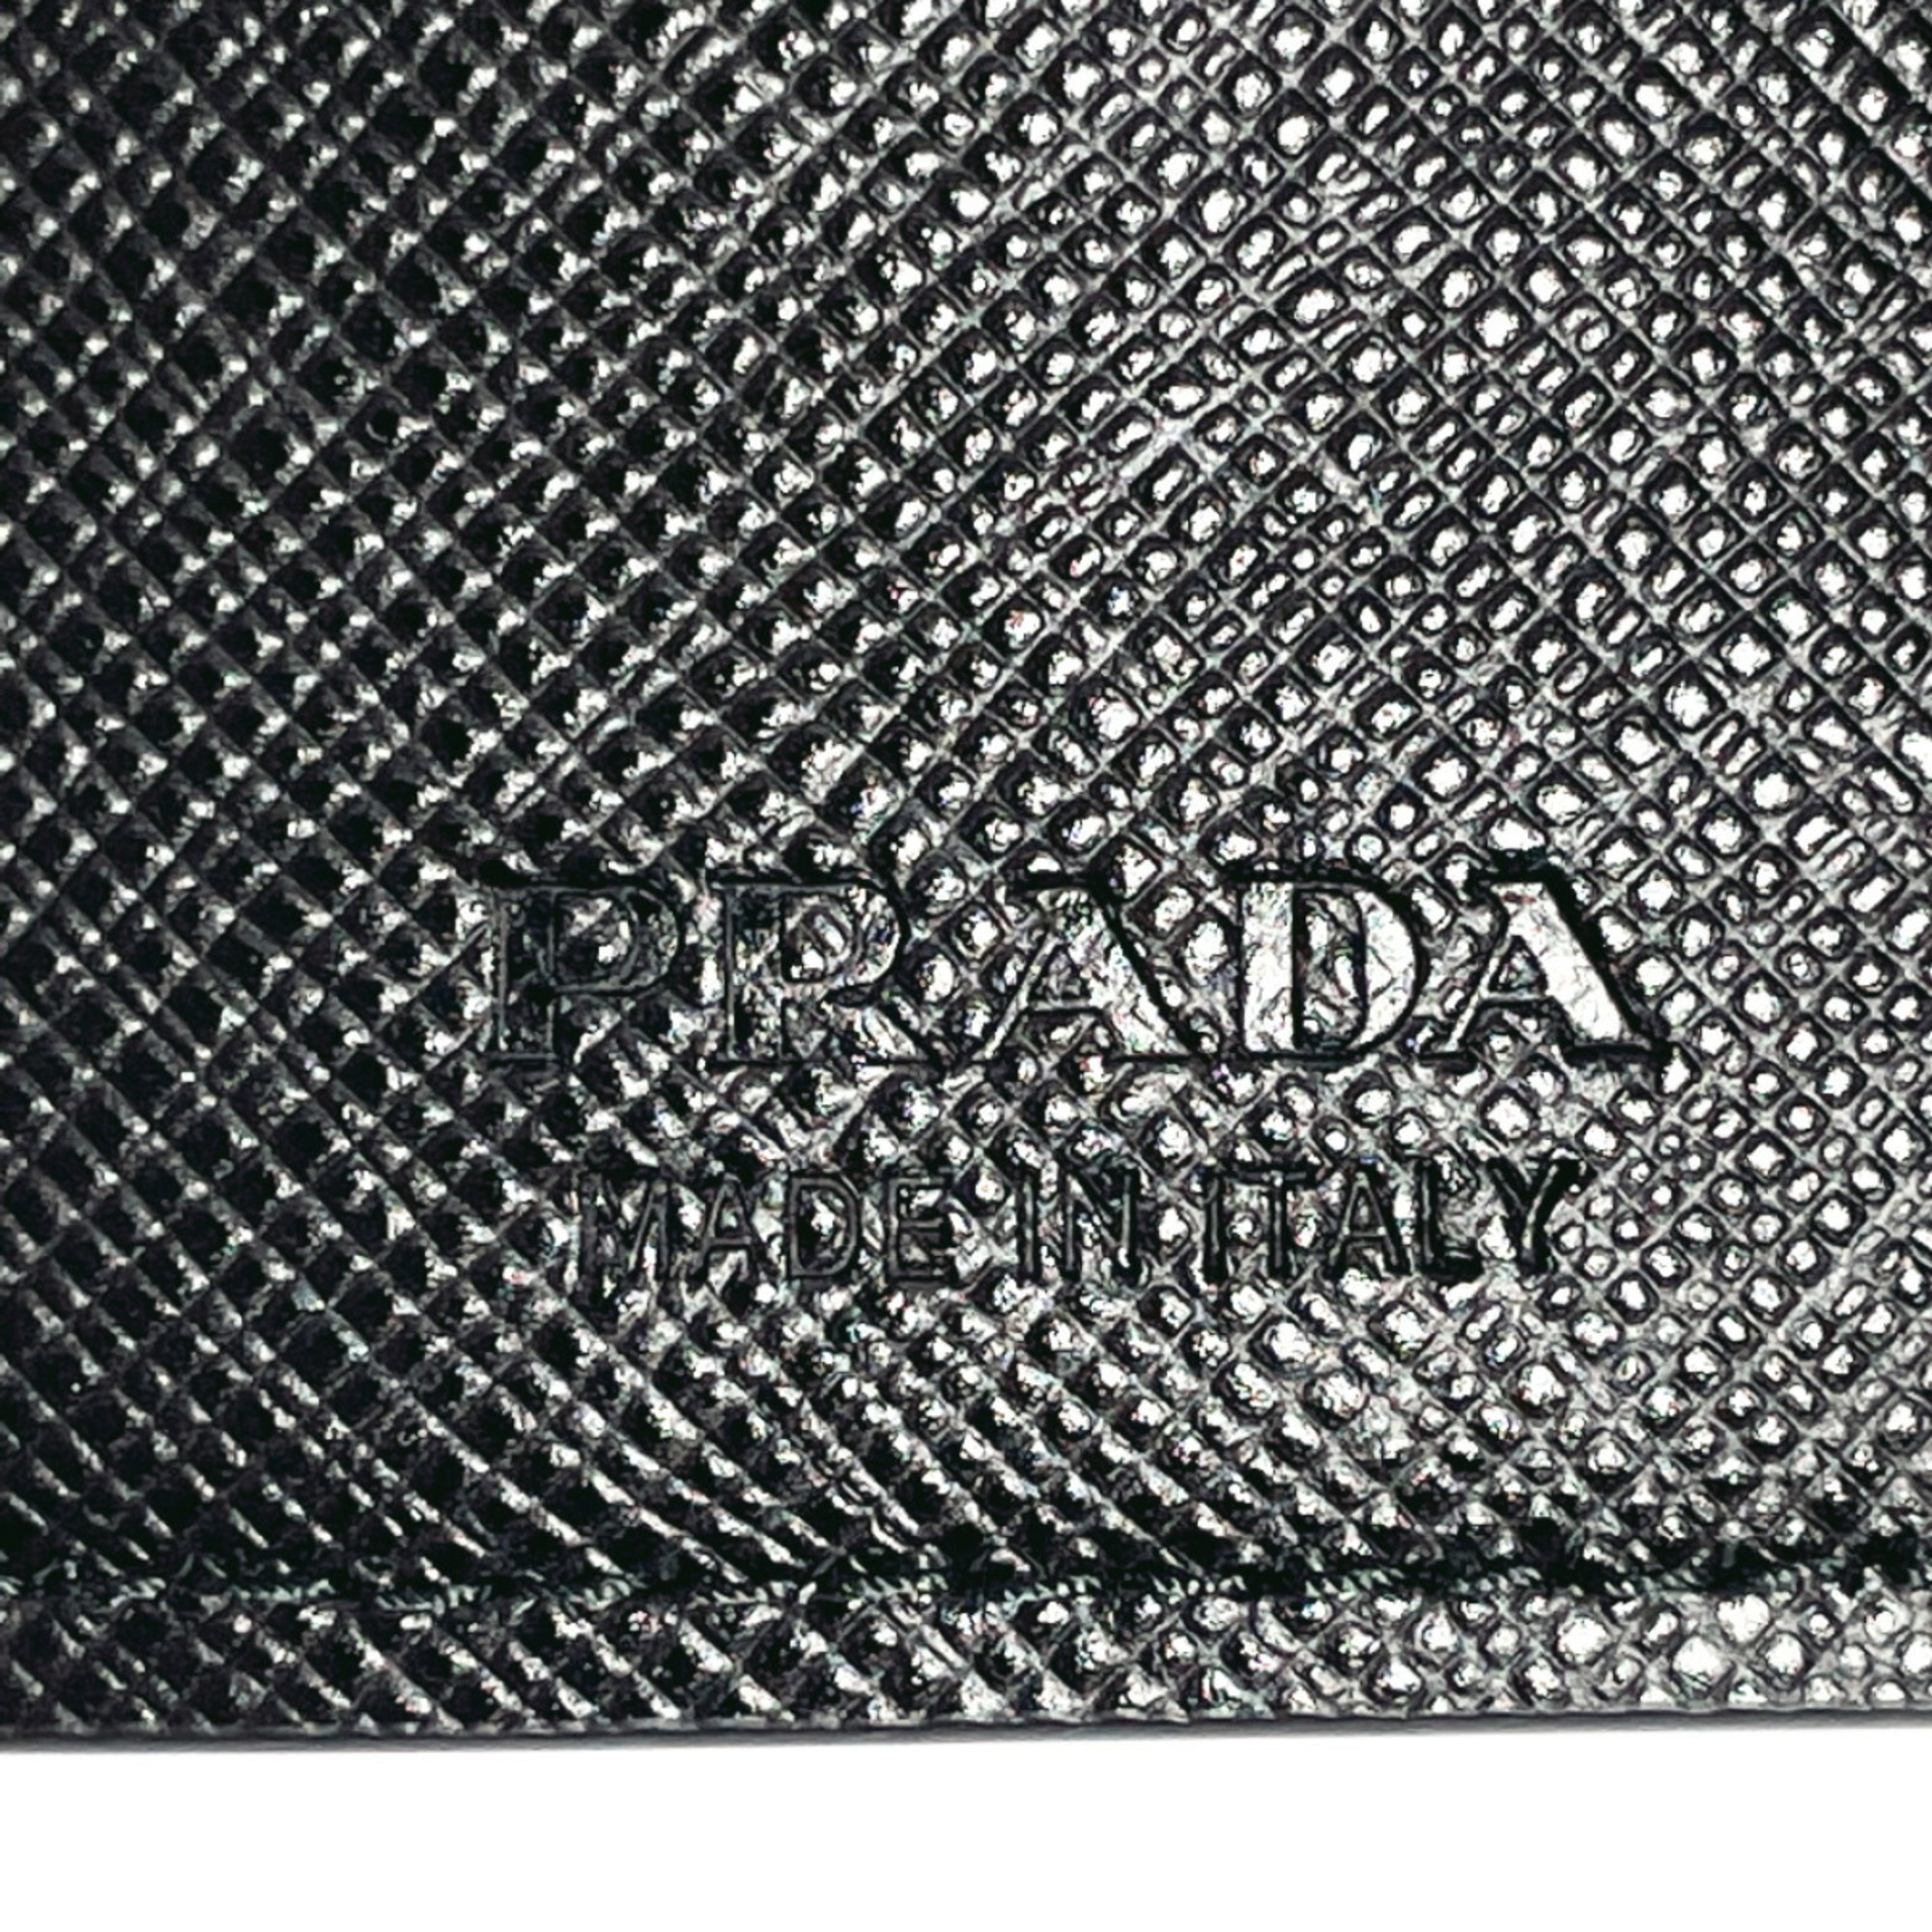 PRADA 2MH021 Tri-fold Wallet Saffiano Leather Black Unisex N4023888